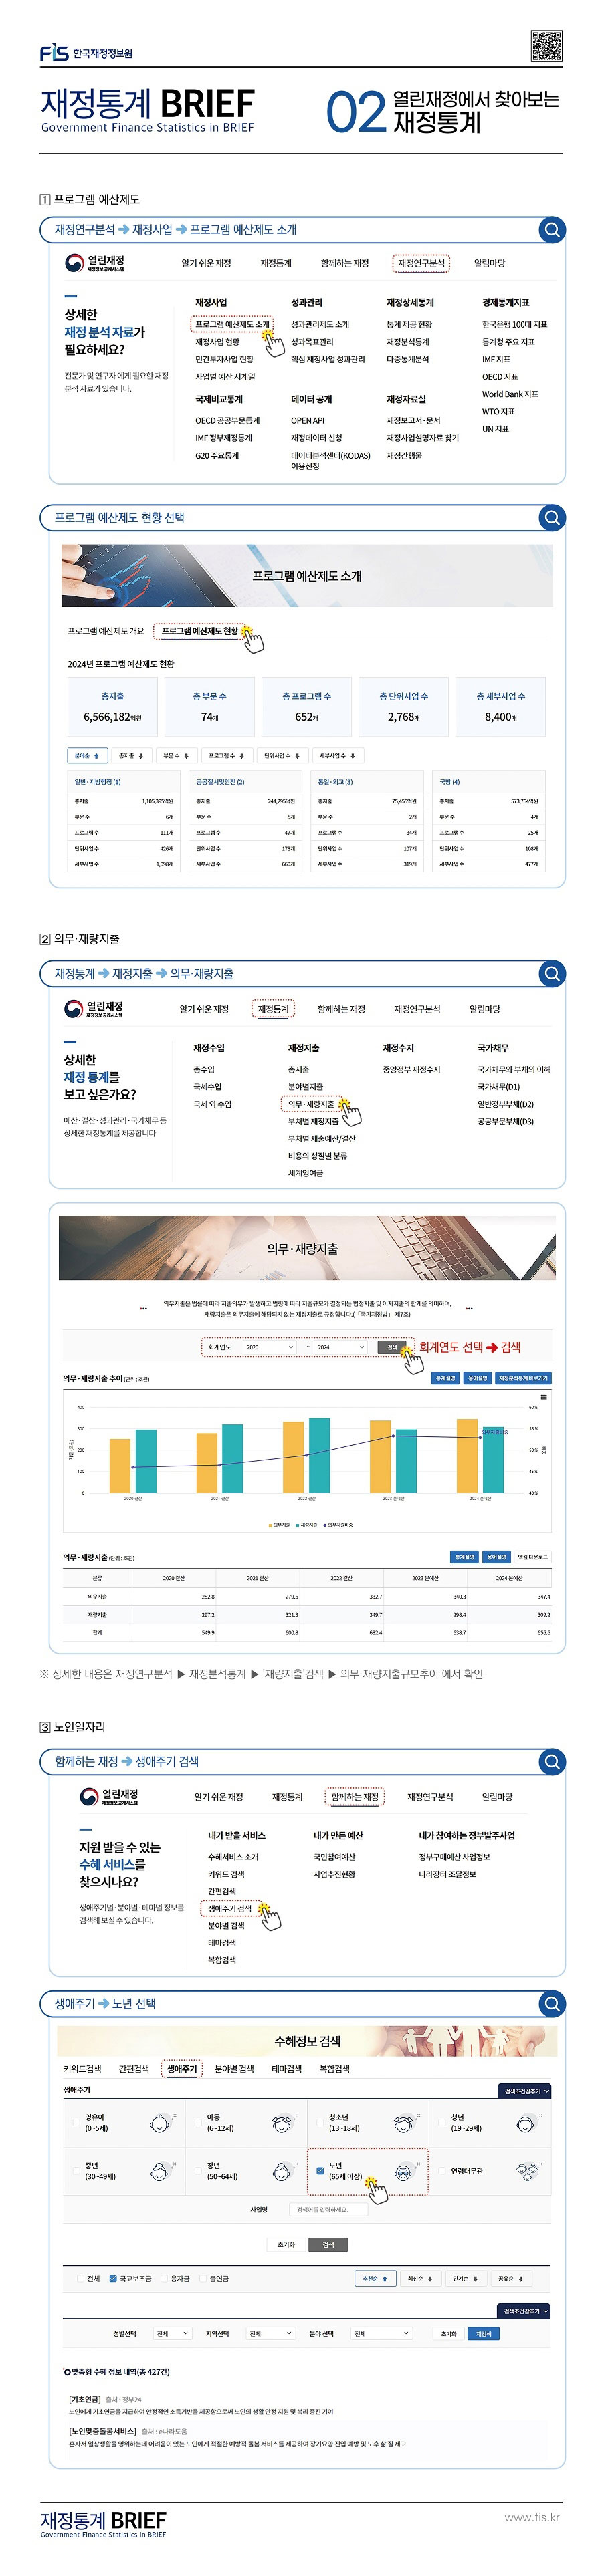 한국재정정보원 재정통계 BRIEF 02 열린재정에서 찾아보는 재정통계 : 클릭하시면 해당 게시물의 첨부파일을 통해 자세한 사항을 확인하실 수 있습니다.